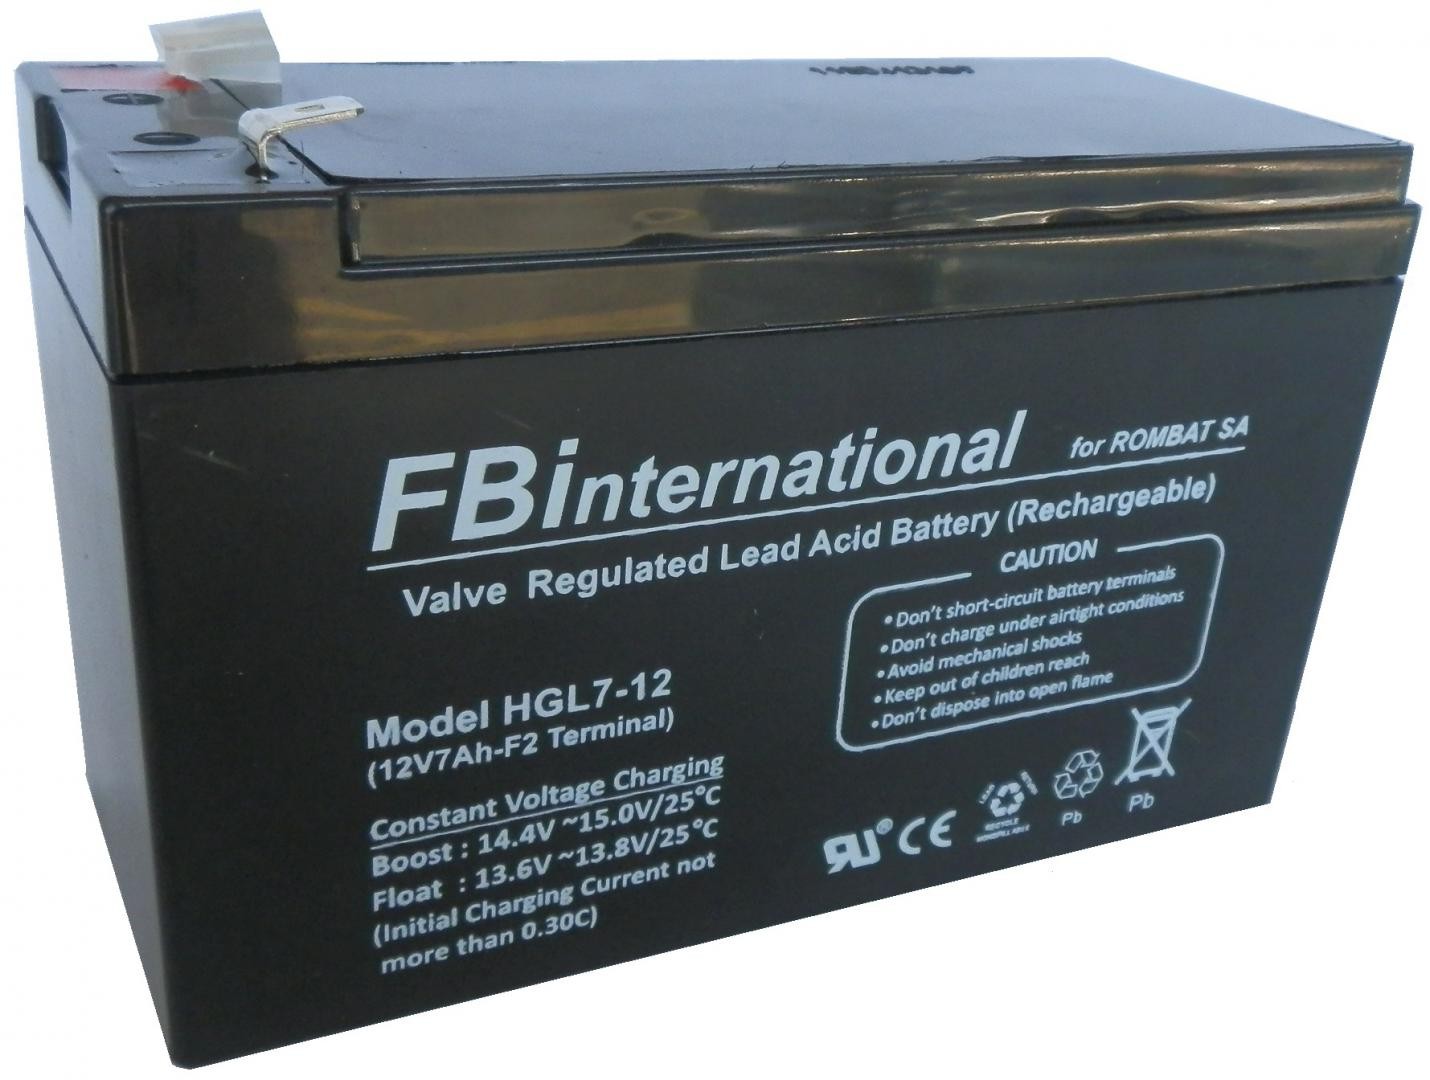 Acumulator stationar pentru UPS 7A/12V HGL12-7, Terminal F2 Dimensiuni151 x 65 x 101 mm